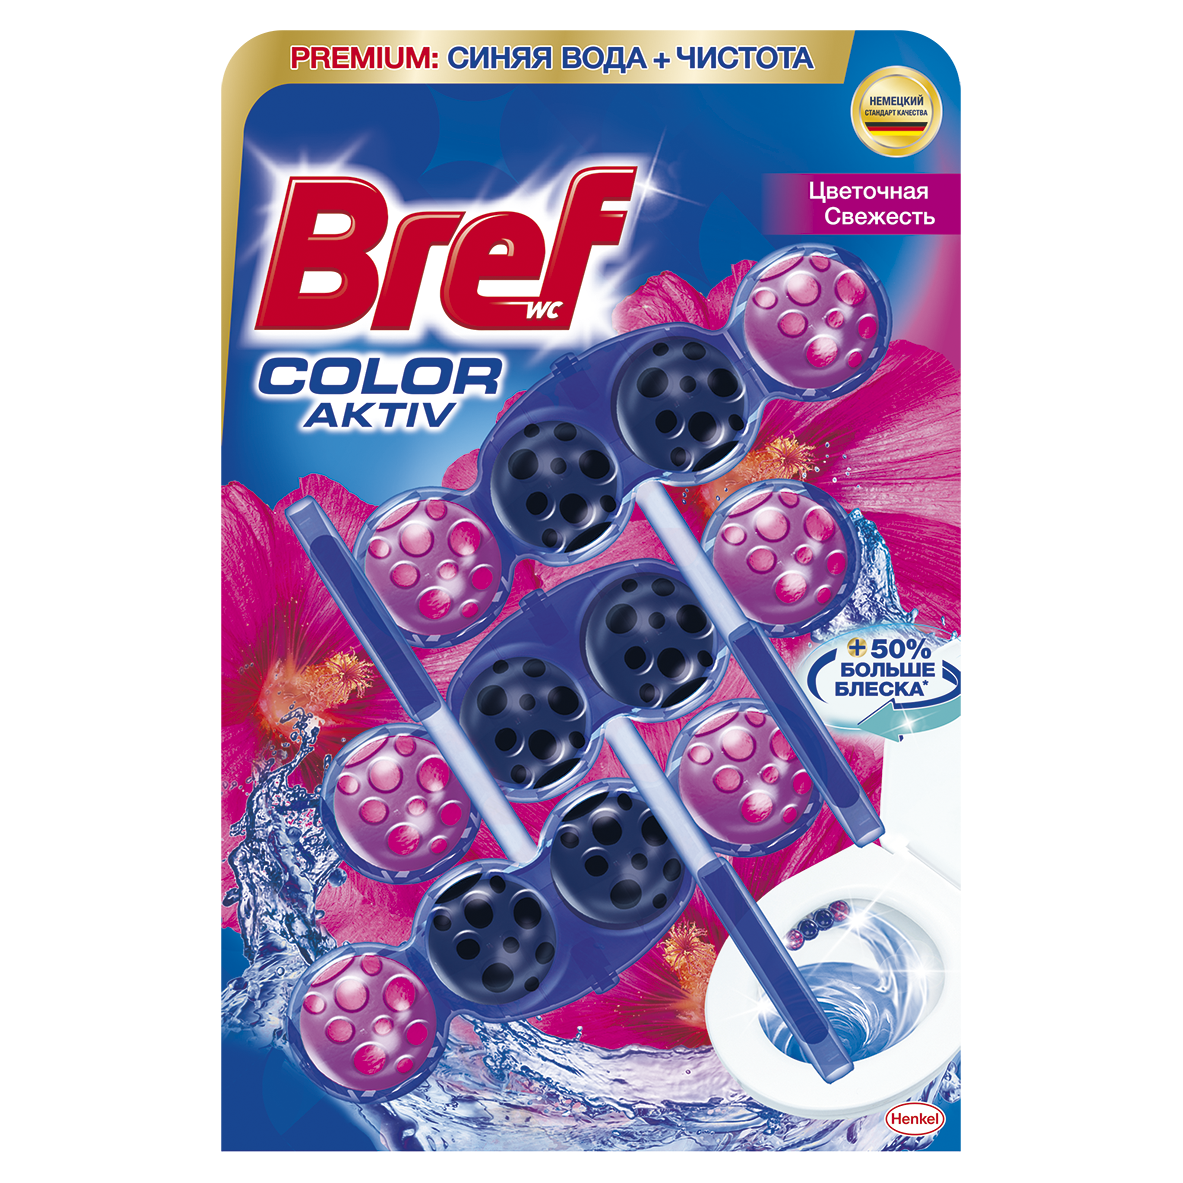 Туалетный блок для унитаза Bref Color aktiv Цветочная свежесть, 3 шт. (763114) - фото 1